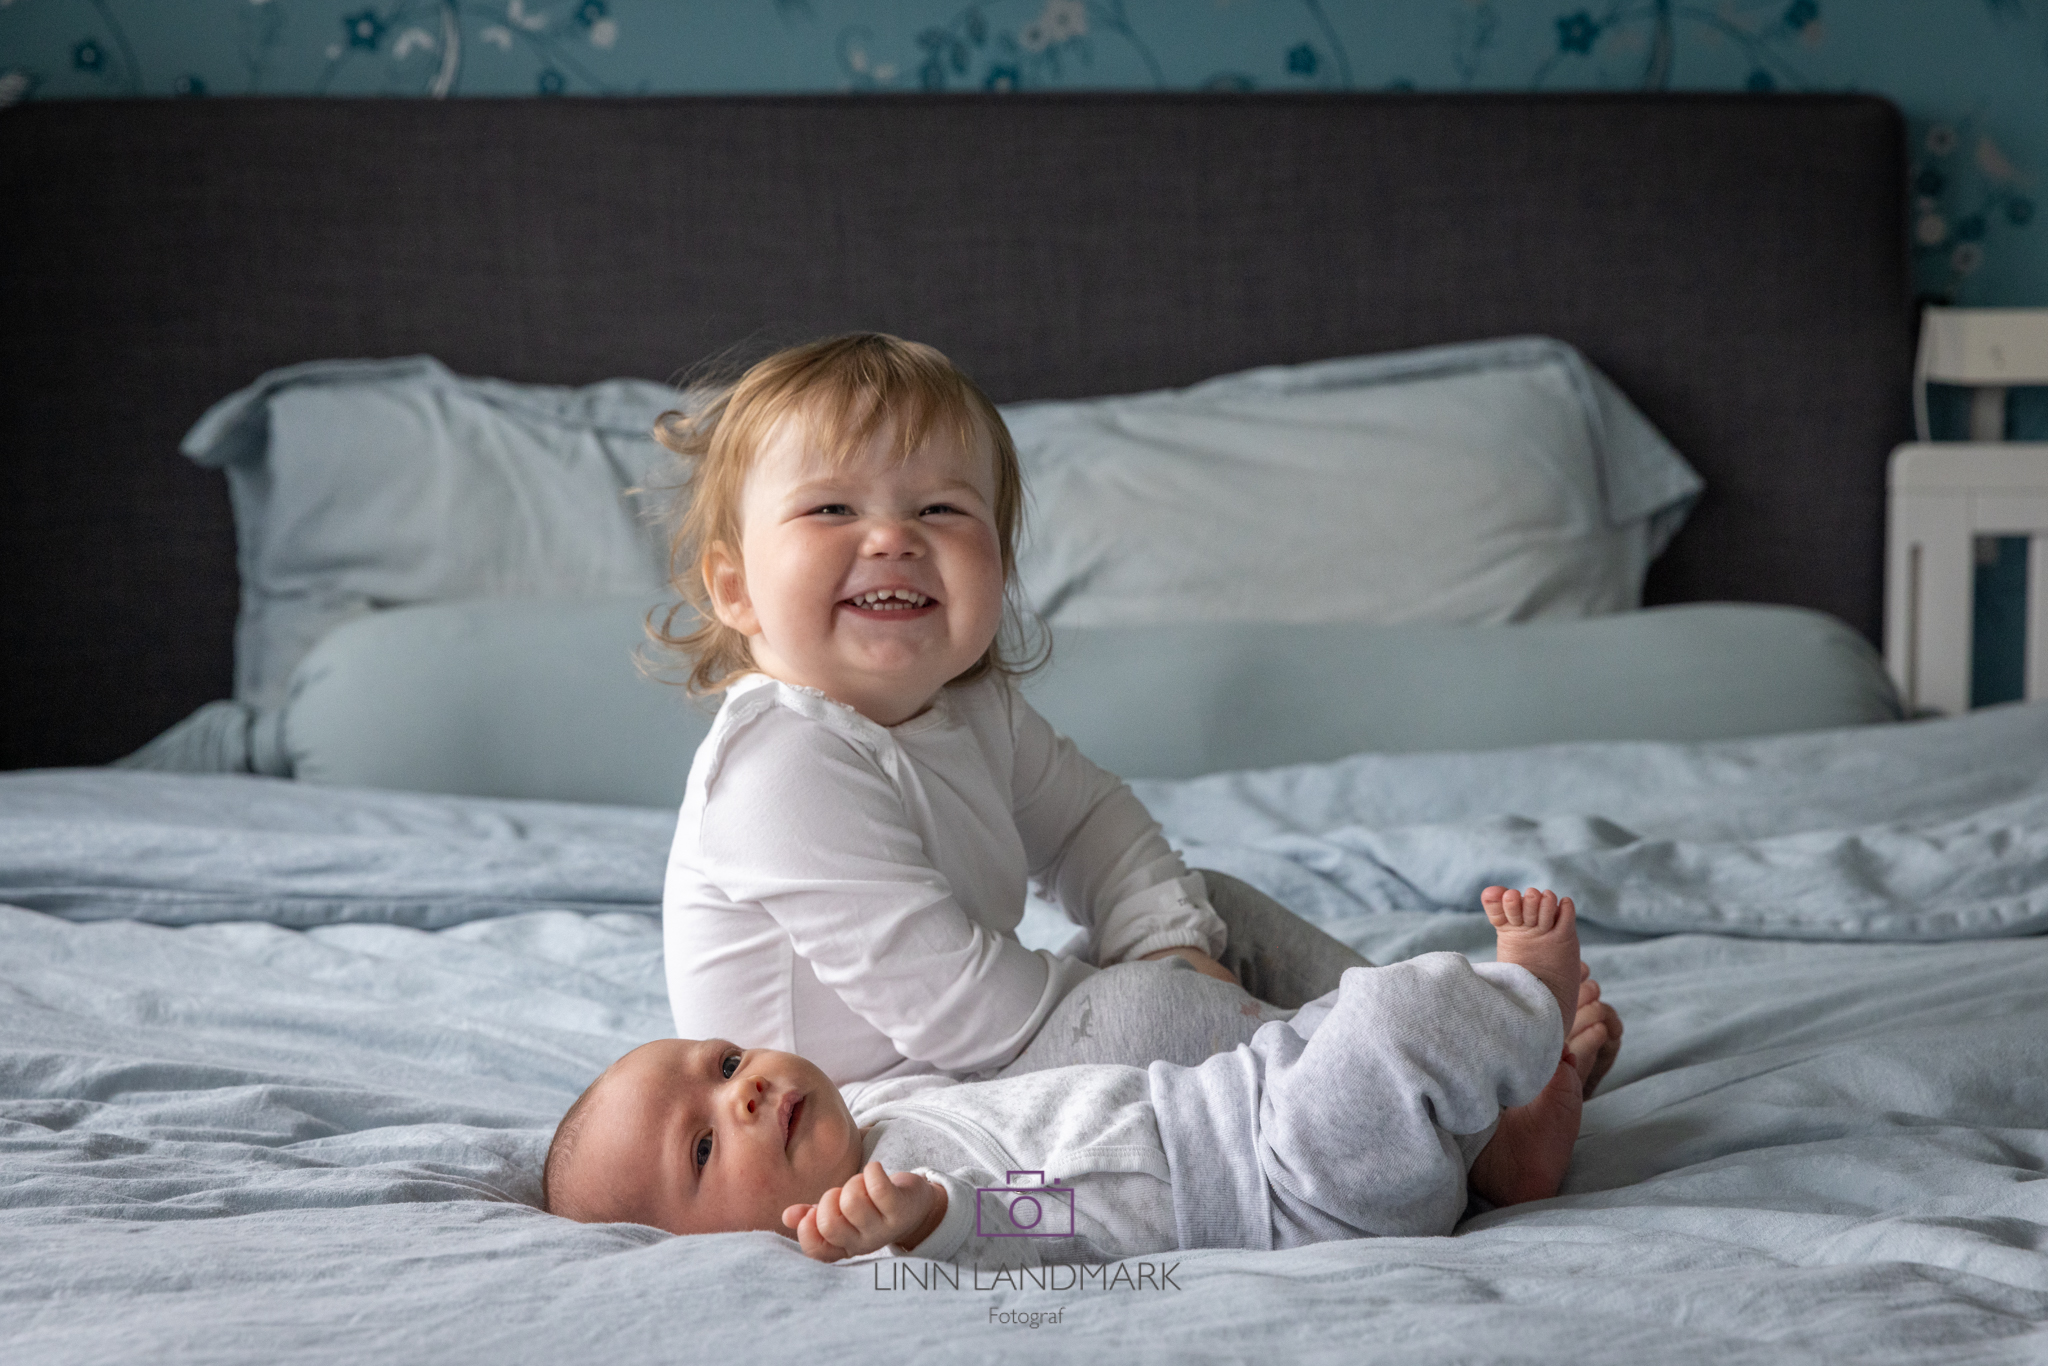 En nyfødt baby ligger på ryggen på en stor seng, storesøster på ett år sitter bak og smiler mot kamera. Blått sengetøy og puter, barna har hvit og grå klær på seg.